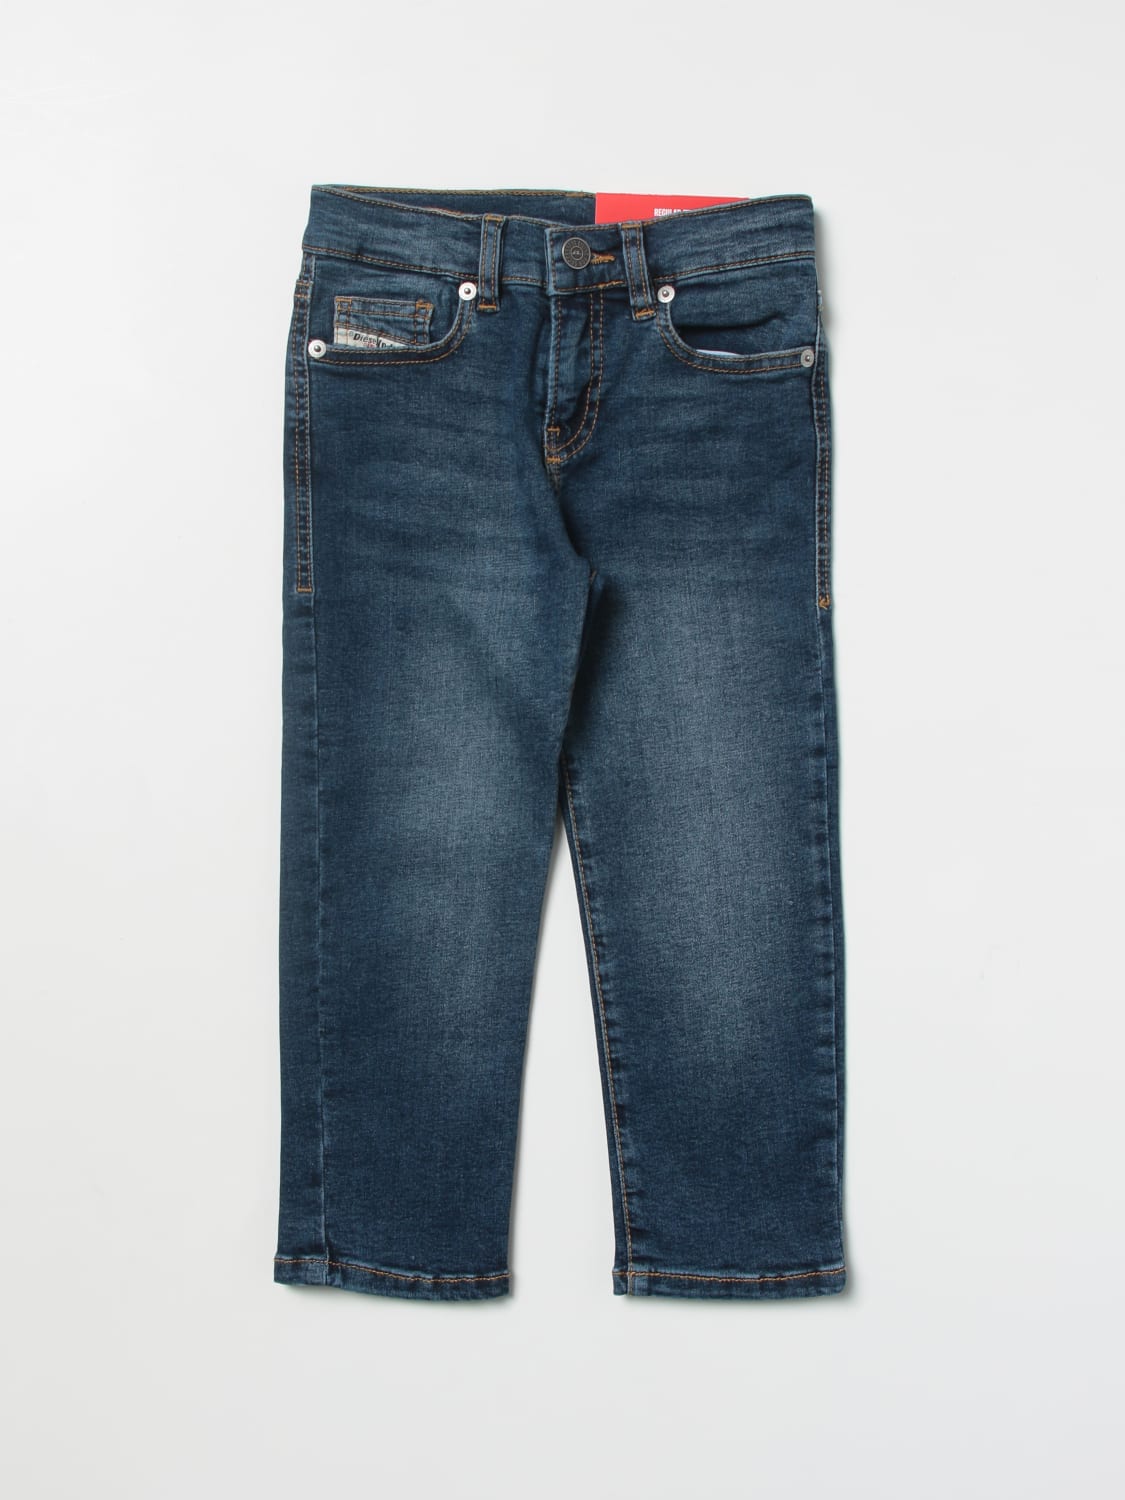 Romantik nøjagtigt Theseus Diesel Outlet: jeans for boys - Denim | Diesel jeans J00809KXBD1 online on  GIGLIO.COM